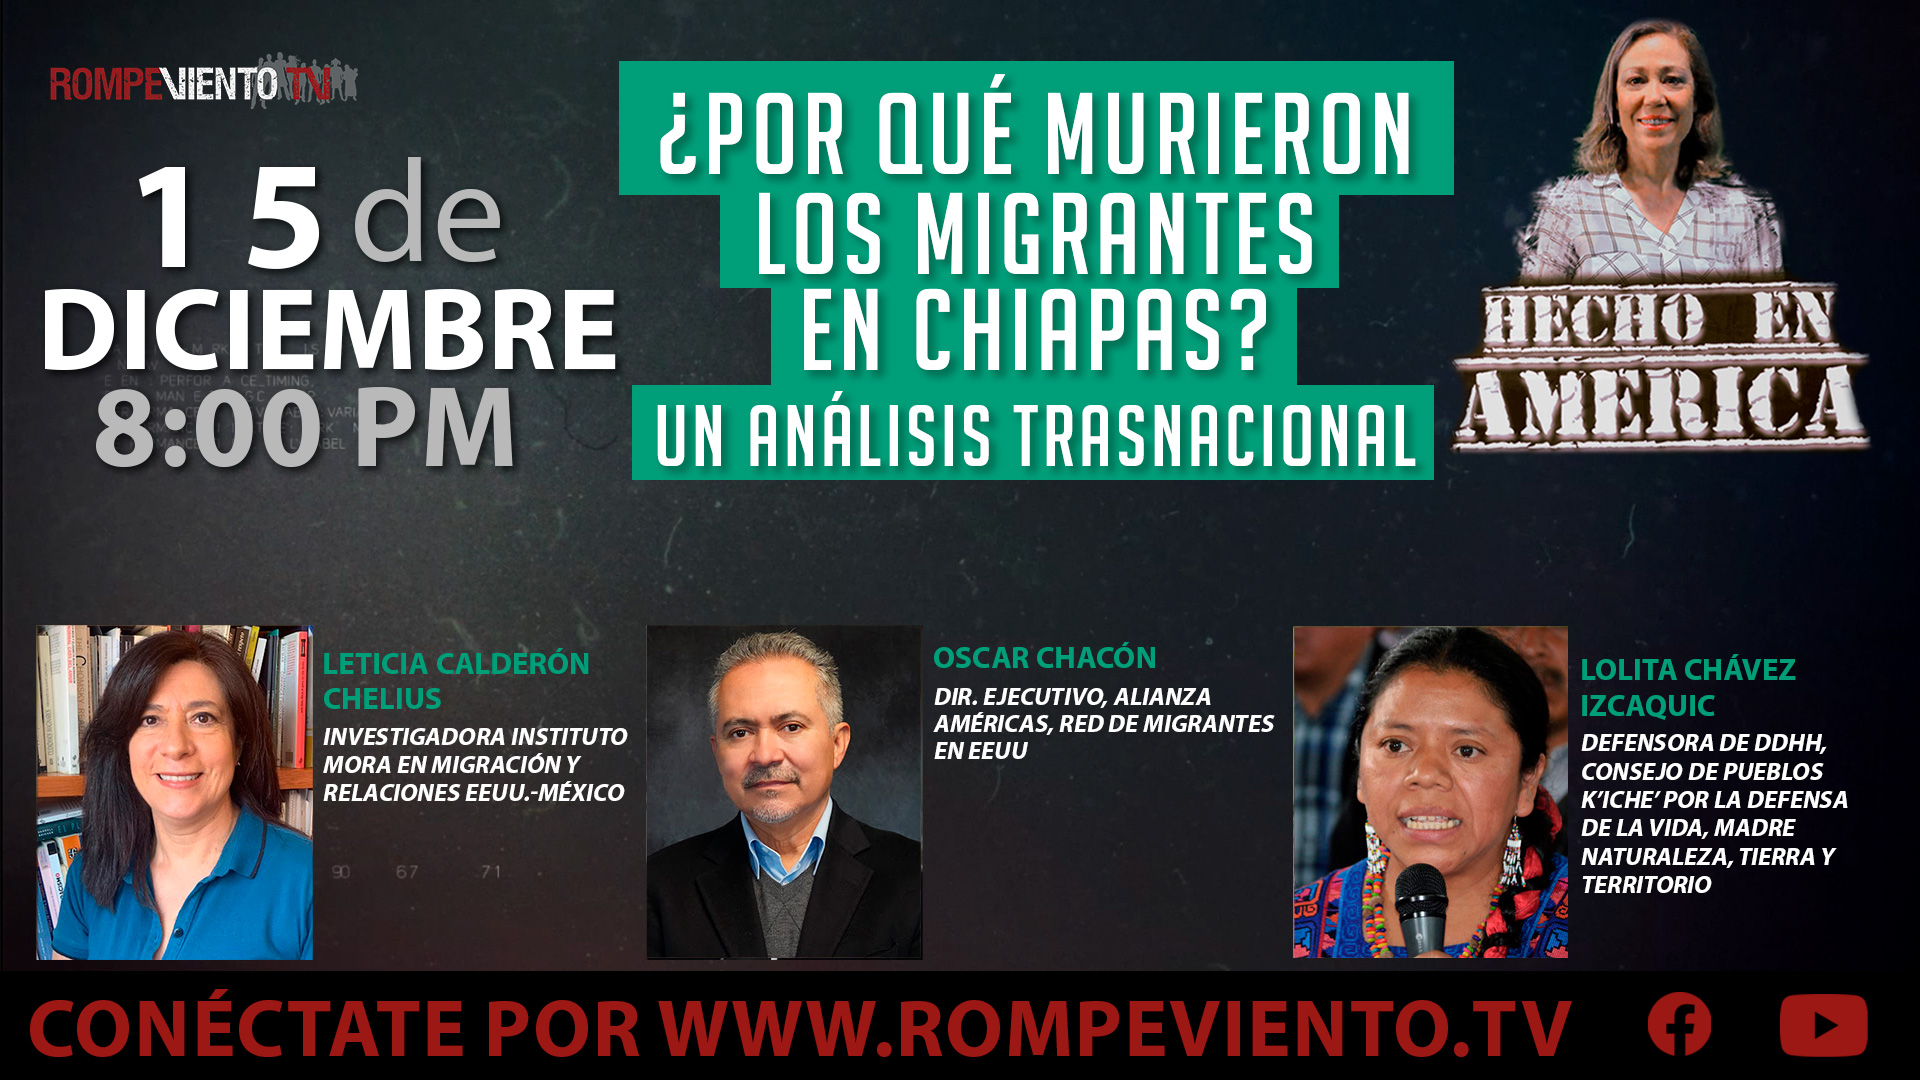 ¿Por qué murieron los migrantes en Chiapas? Un análisis trasnacional - Hecho en América